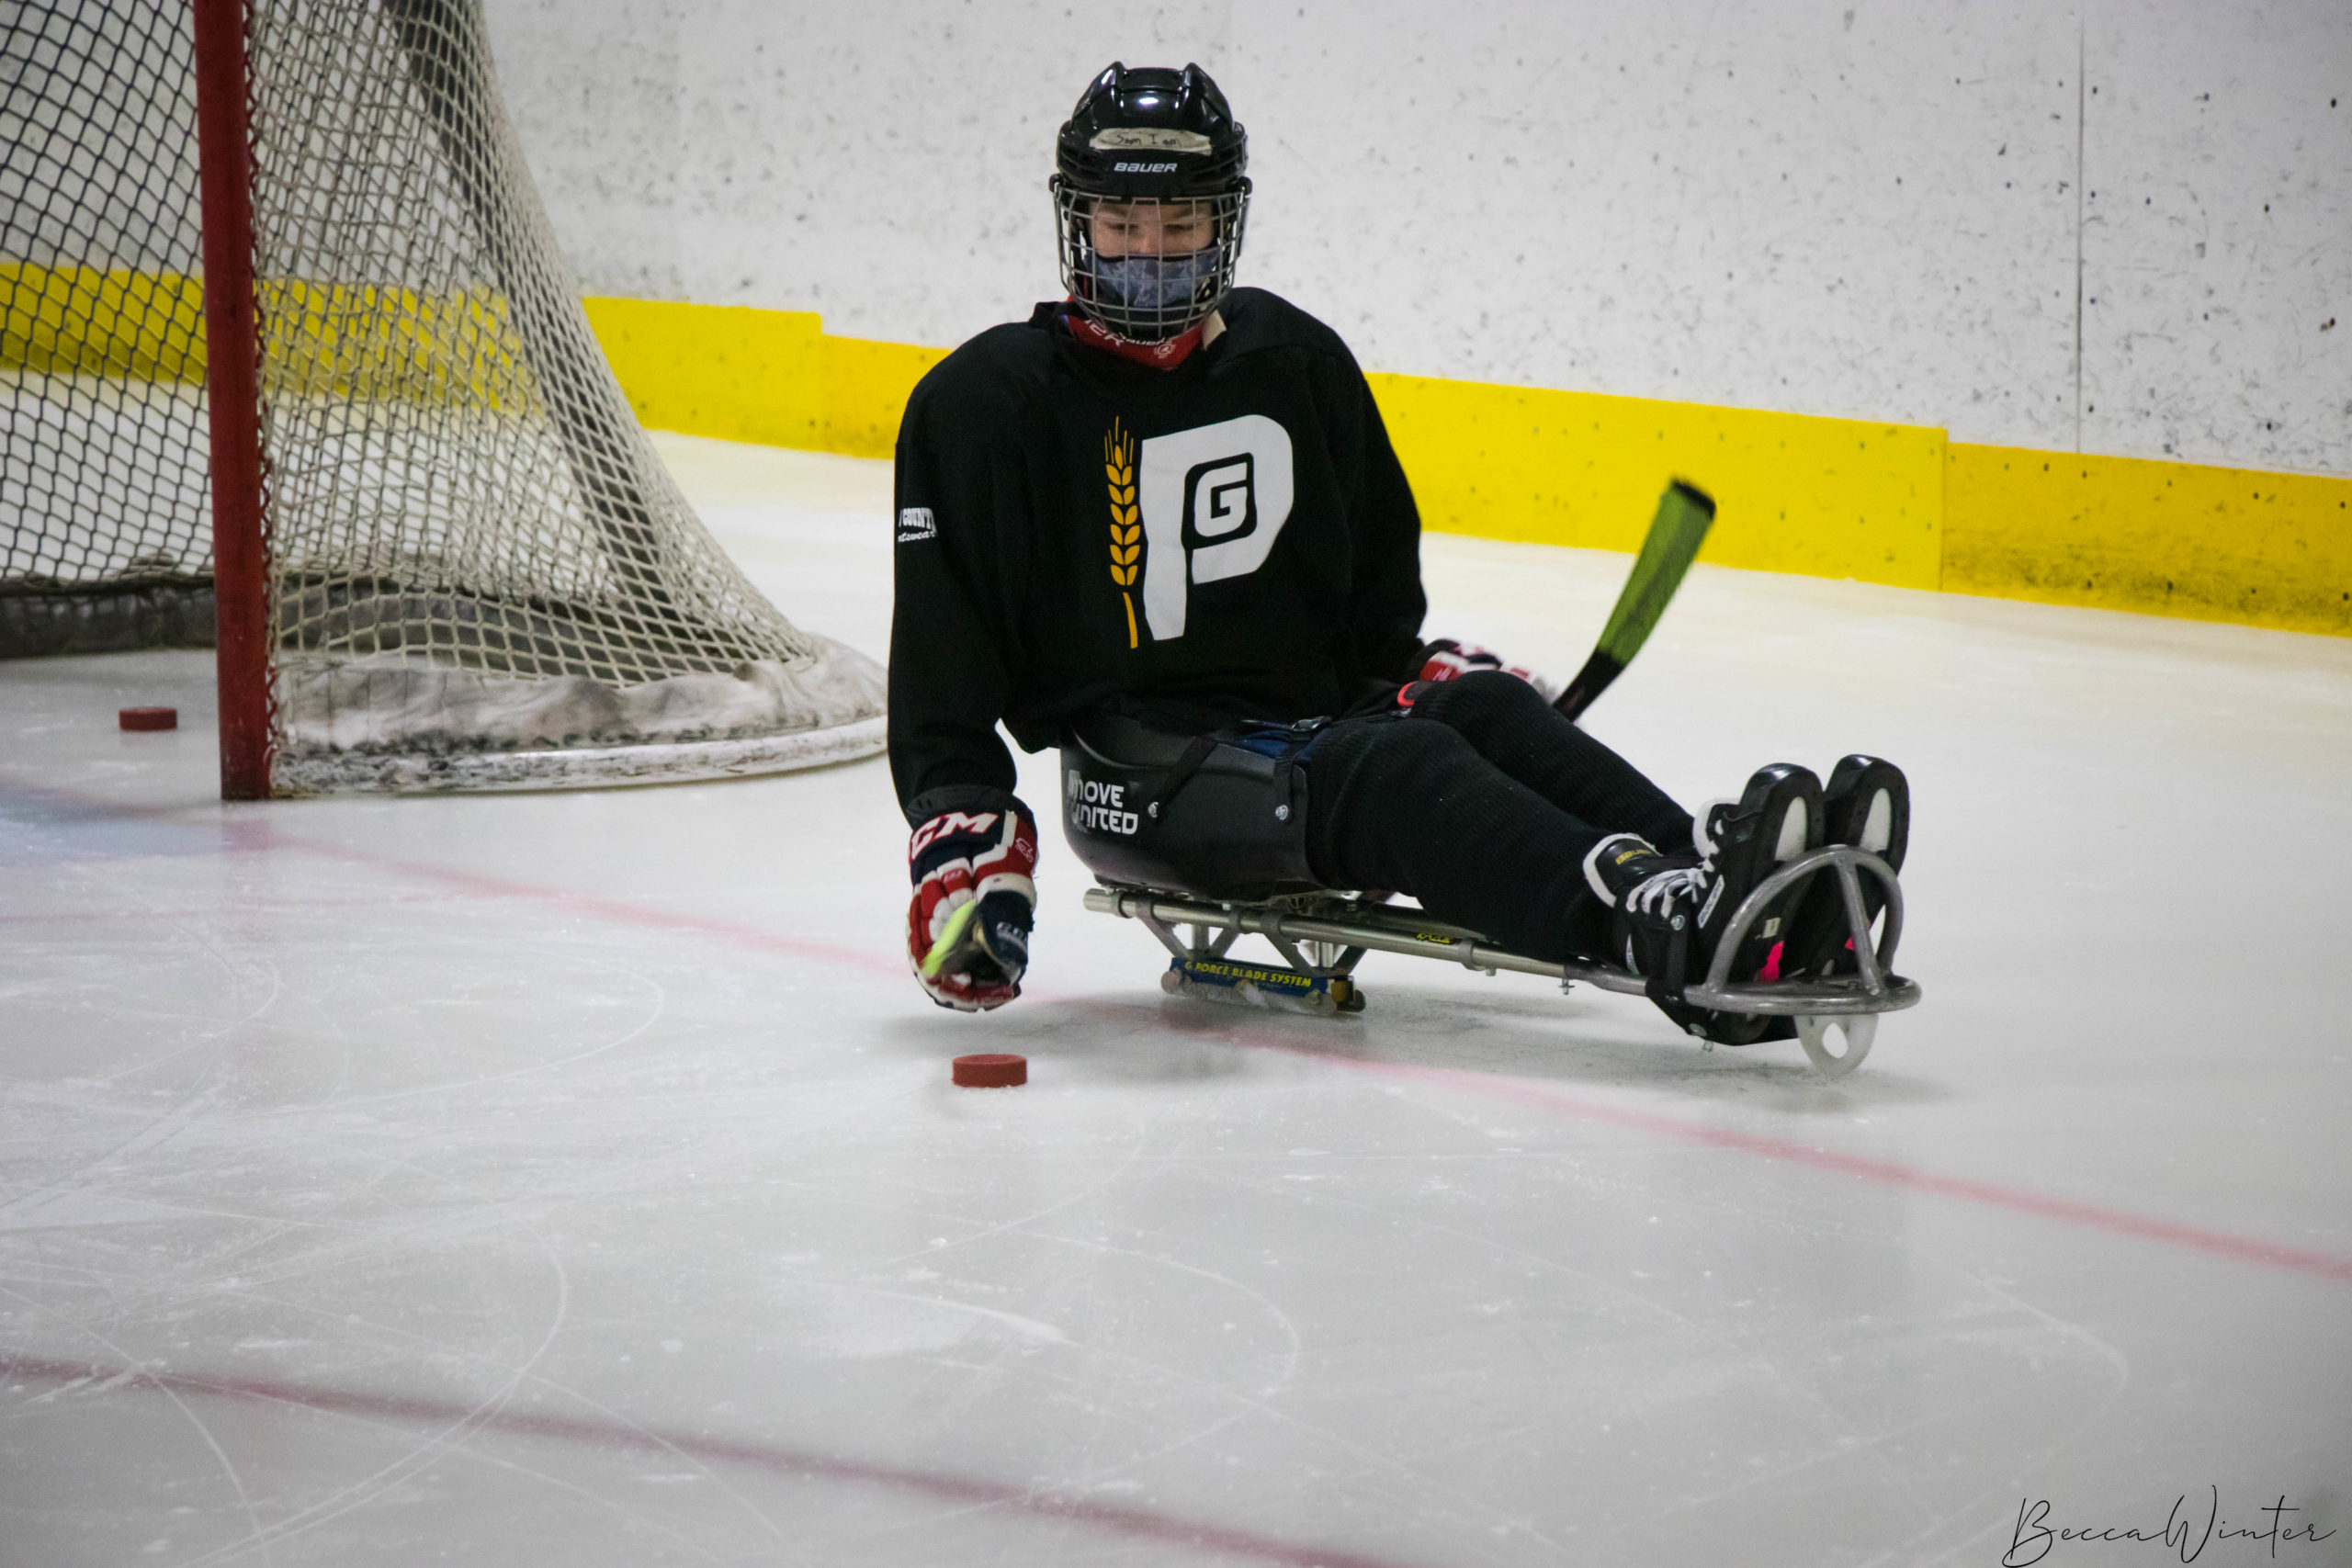 Athlete playing sled hockey